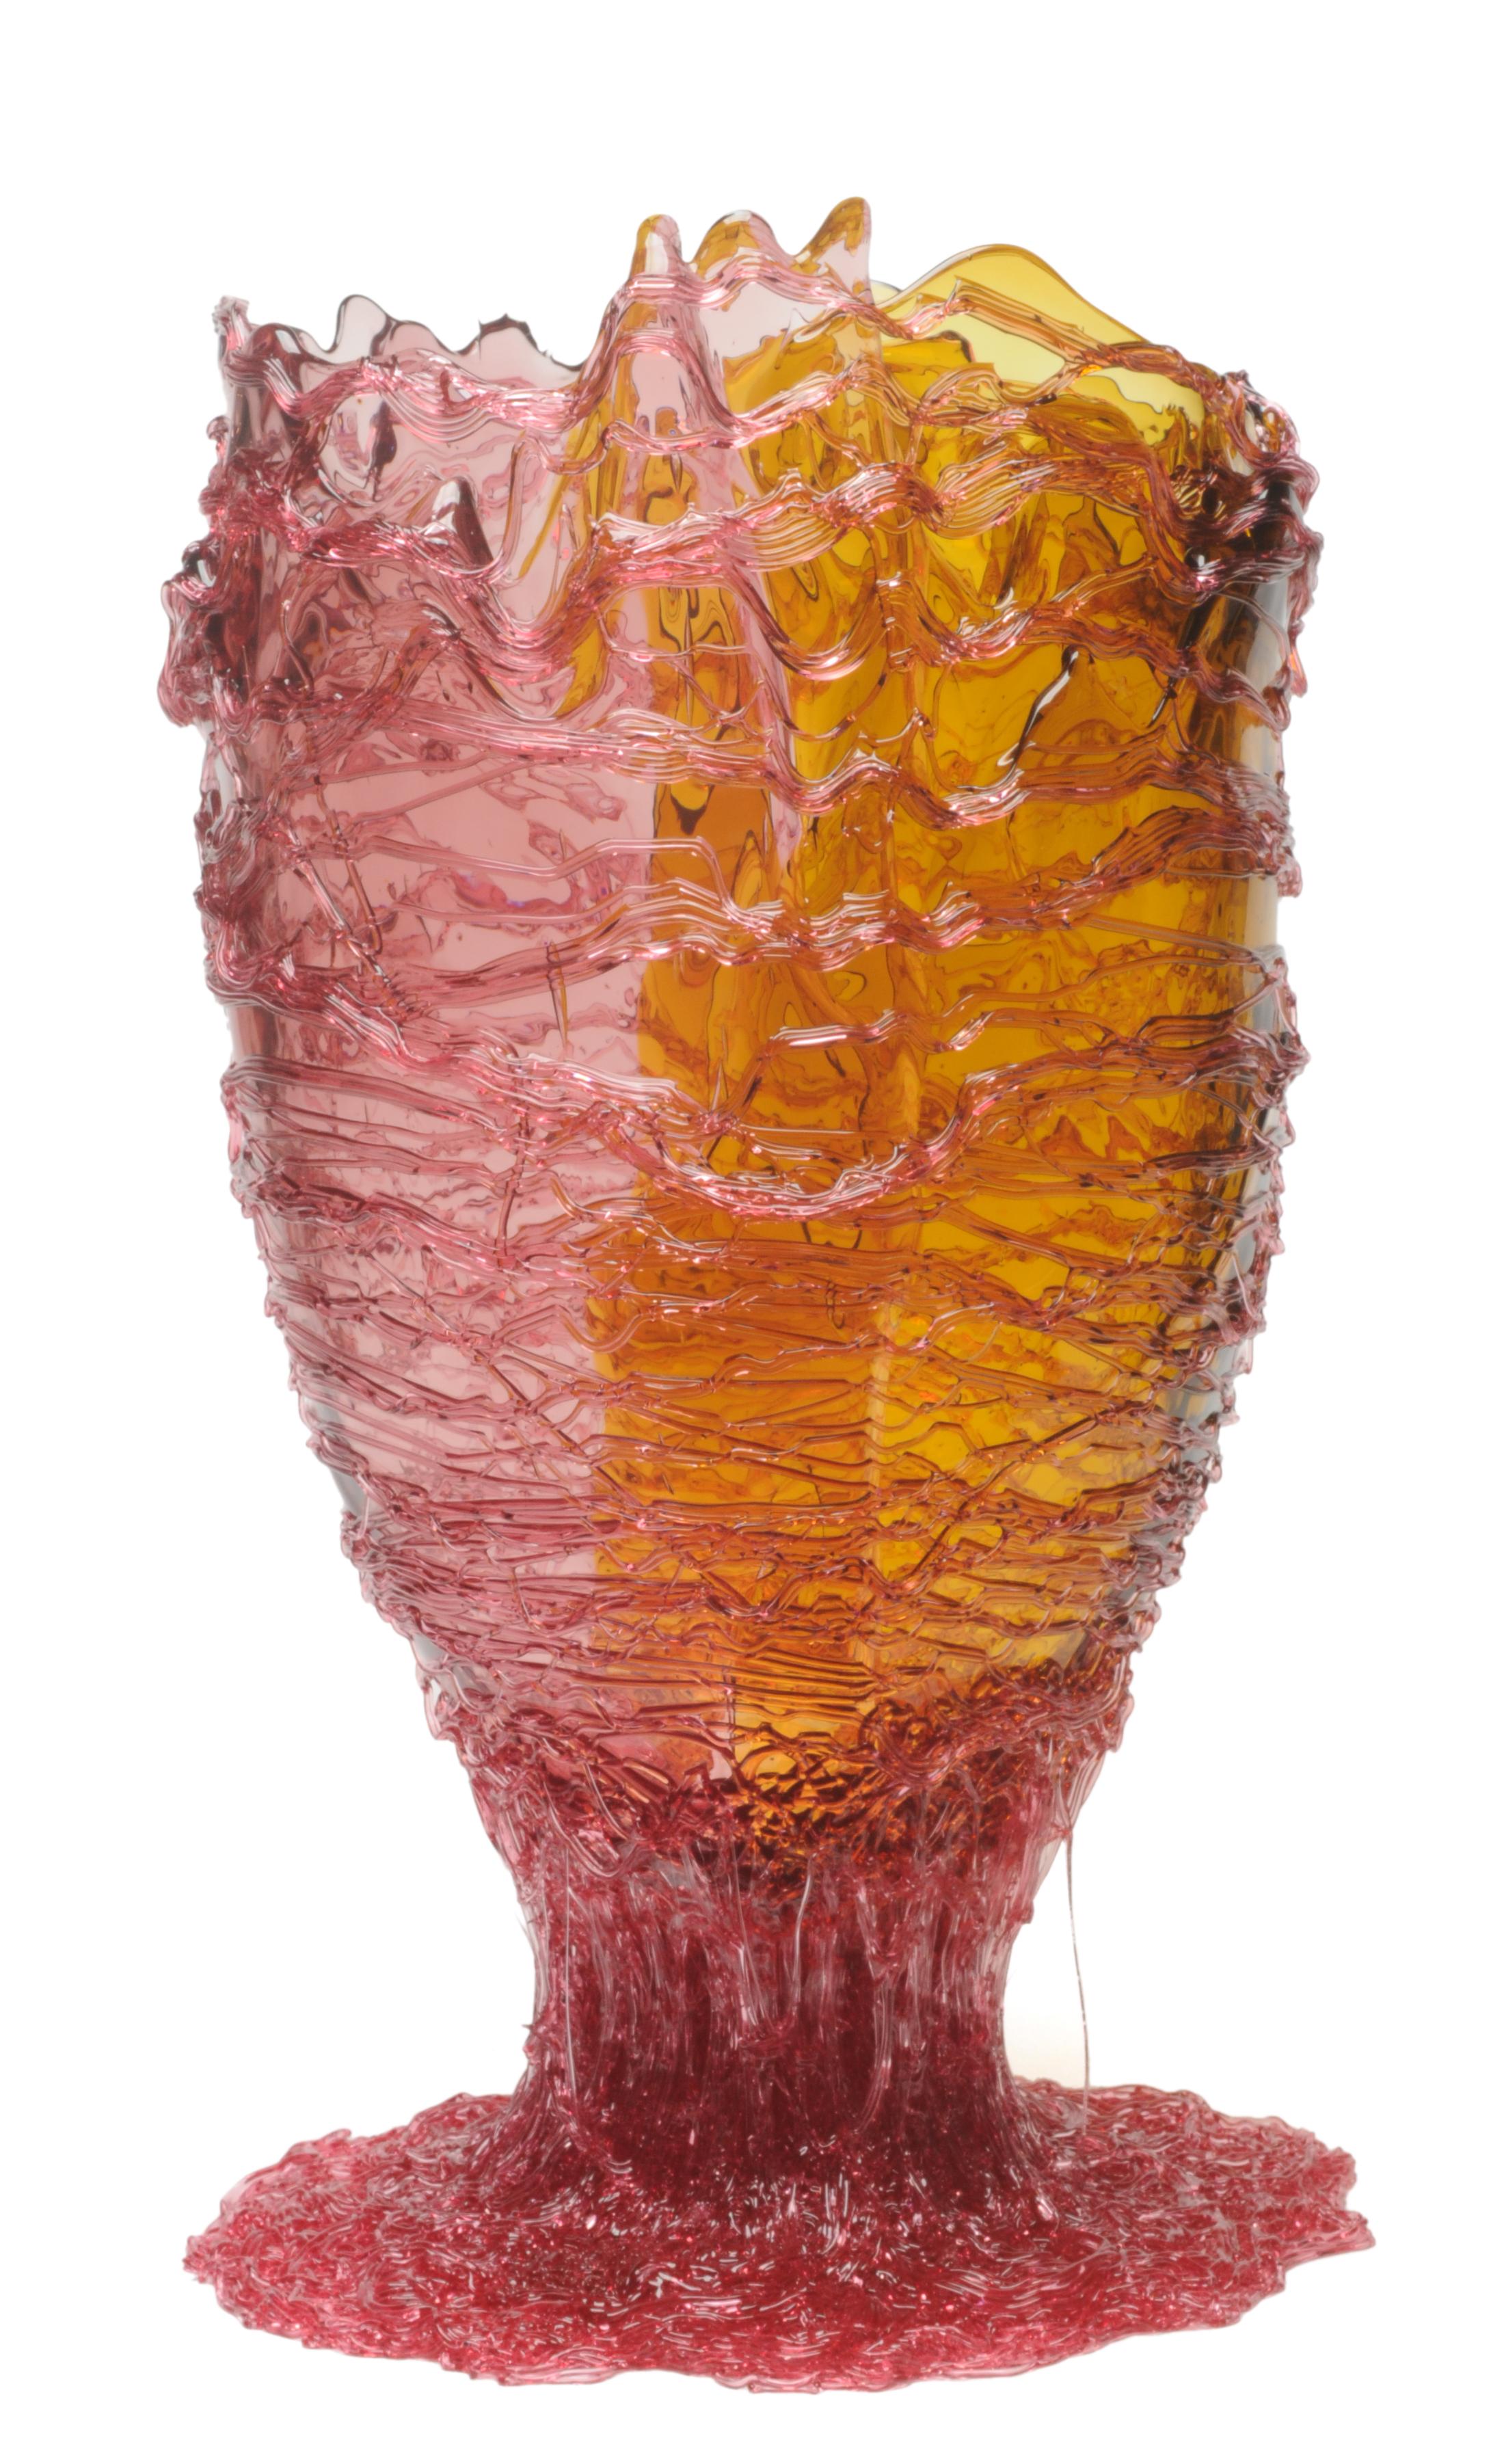 Vase Spaghetti extra color, klar, rosa, bernsteinfarben und fuchsienfarben

Vase aus weichem Harz, entworfen von Gaetano Pesce im Jahr 1995 für die Kollektion Fish Design.

Maße: XL Ø 30cm x H 56cm

Farbe: Klar, rosa, bernsteinfarben und